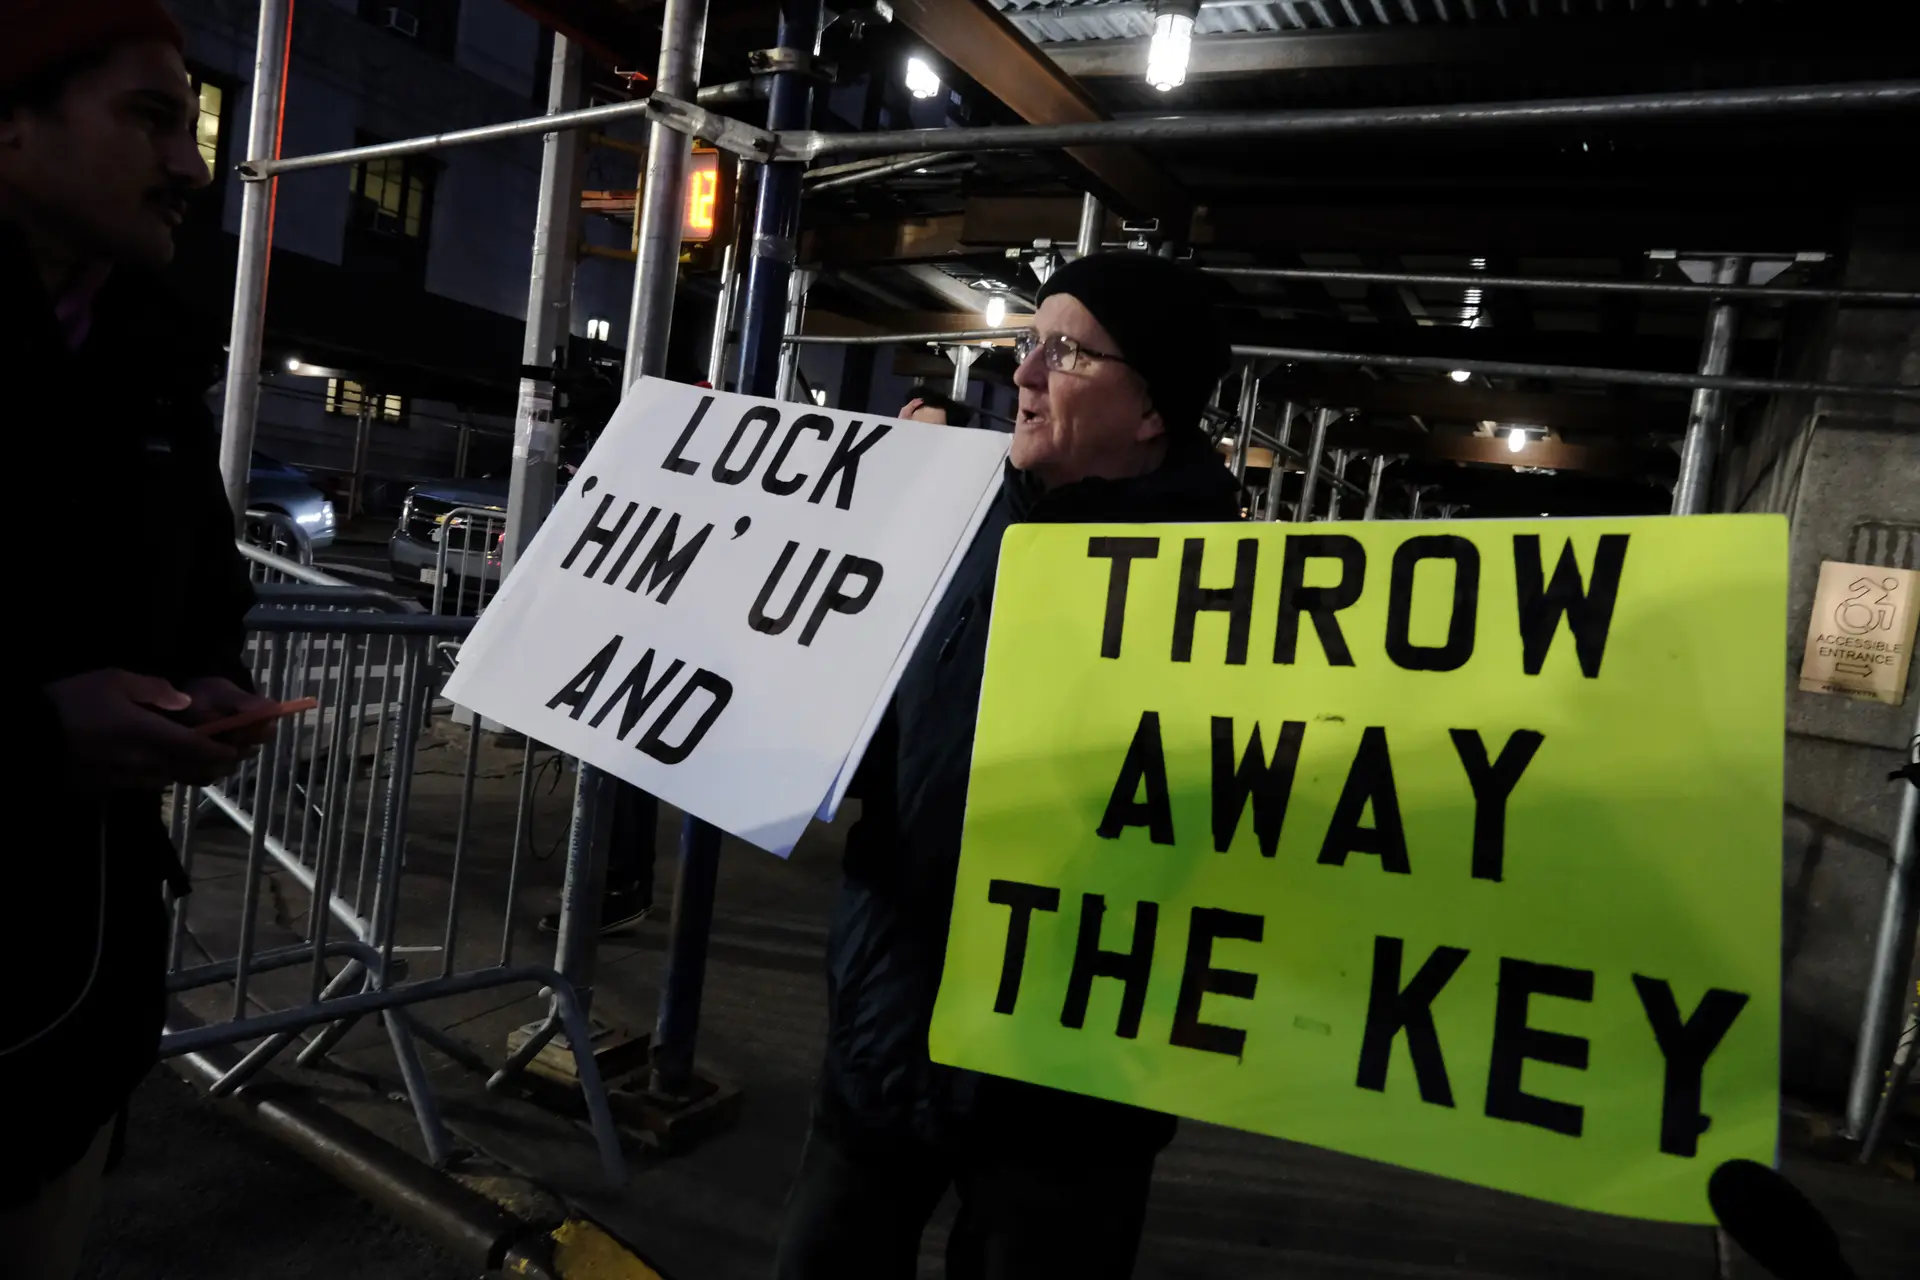 “Prendam-no e deitem fora a chave”, lê-se no cartaz. Manifestantes reuniram-se diante da procuradoria de Nova Iorque que vai acusar formalmente Donald Trump 